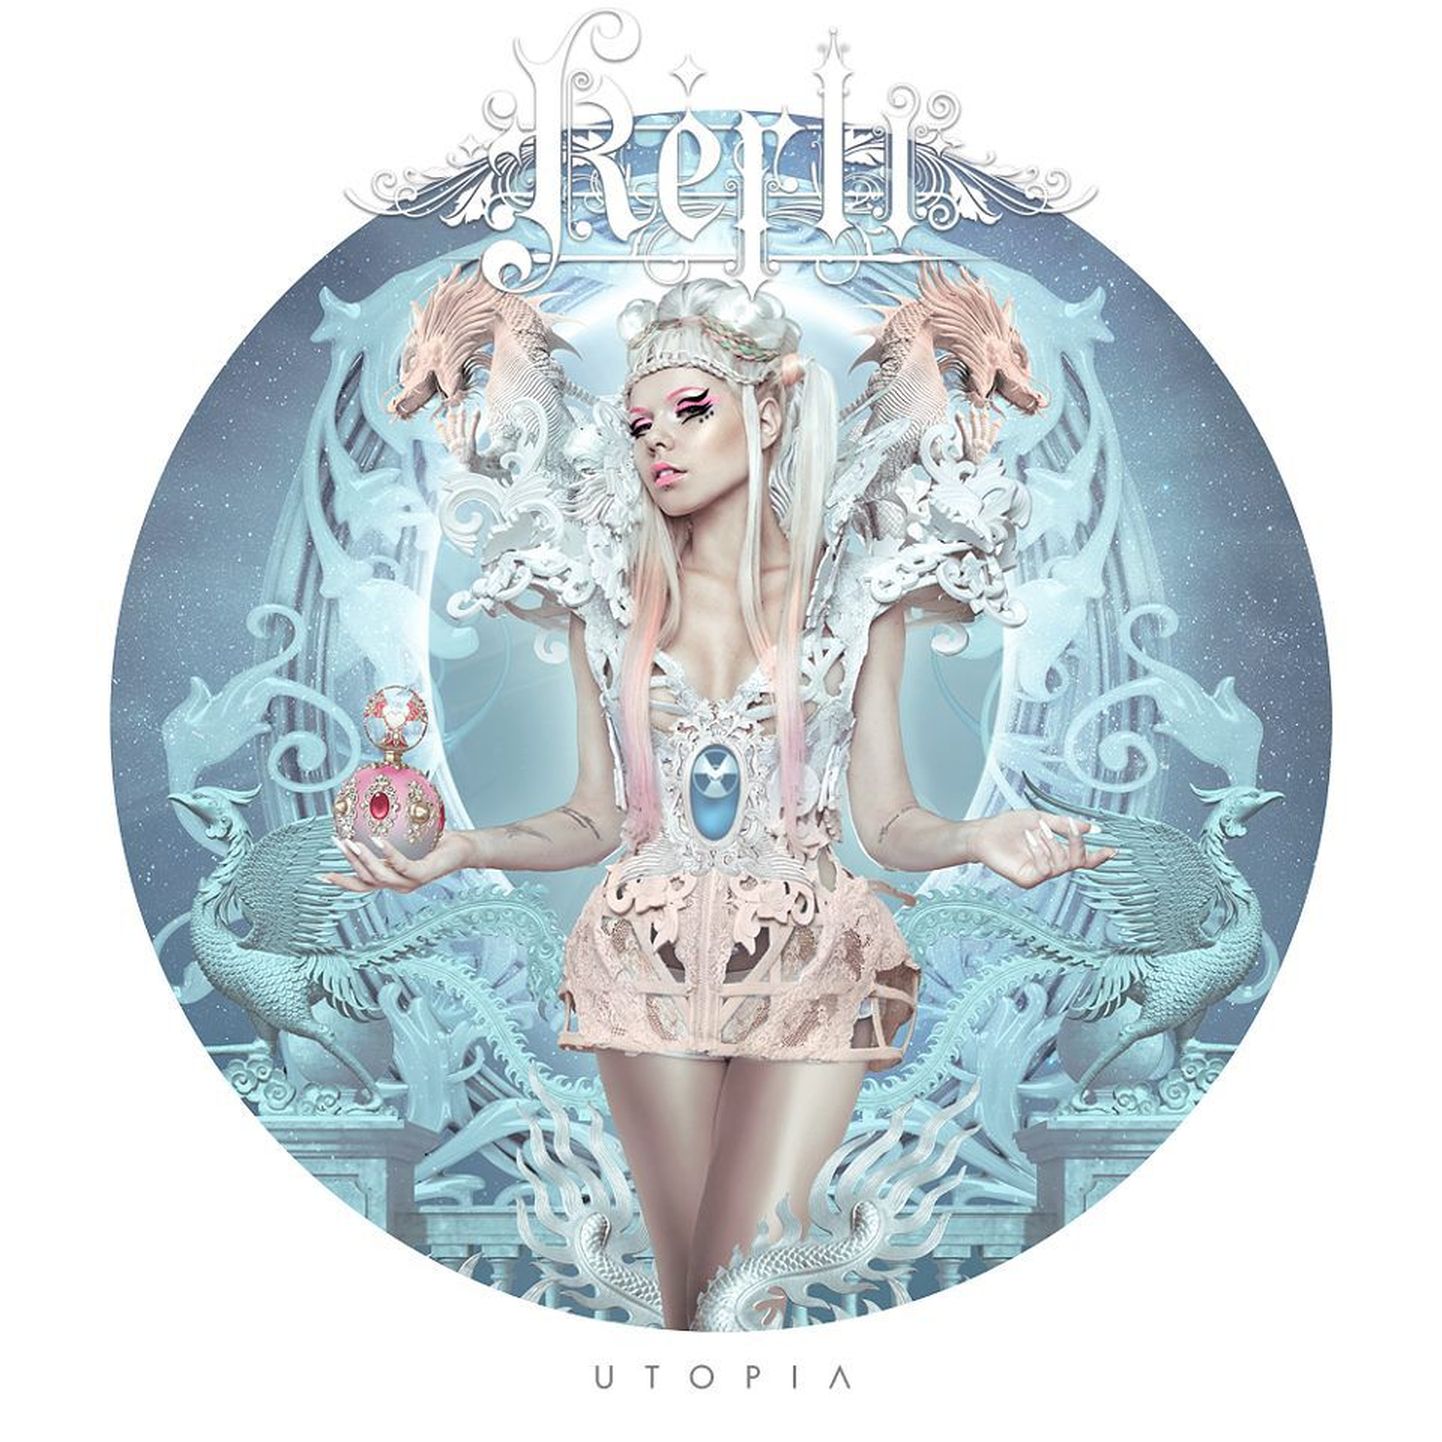 Kerli 19. märtsil ilmuva EP «Utopia» kaas näeb välja seesugune.